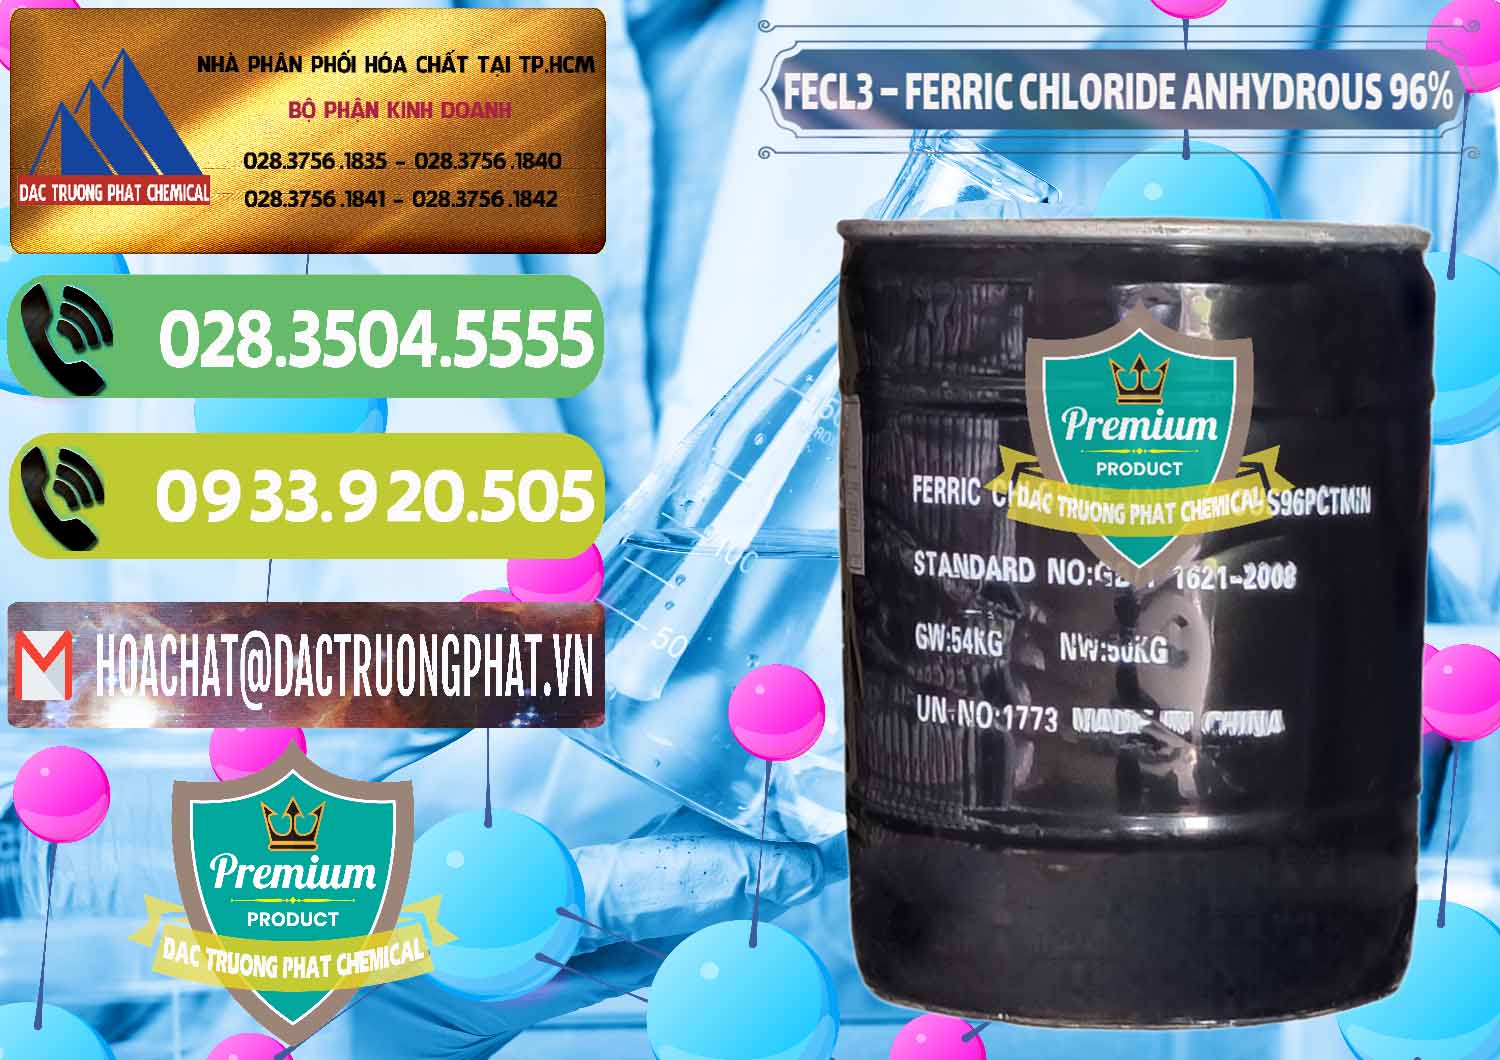 Cty bán _ cung cấp FECL3 – Ferric Chloride Anhydrous 96% Trung Quốc China - 0065 - Nơi chuyên bán _ cung cấp hóa chất tại TP.HCM - hoachatmientay.vn